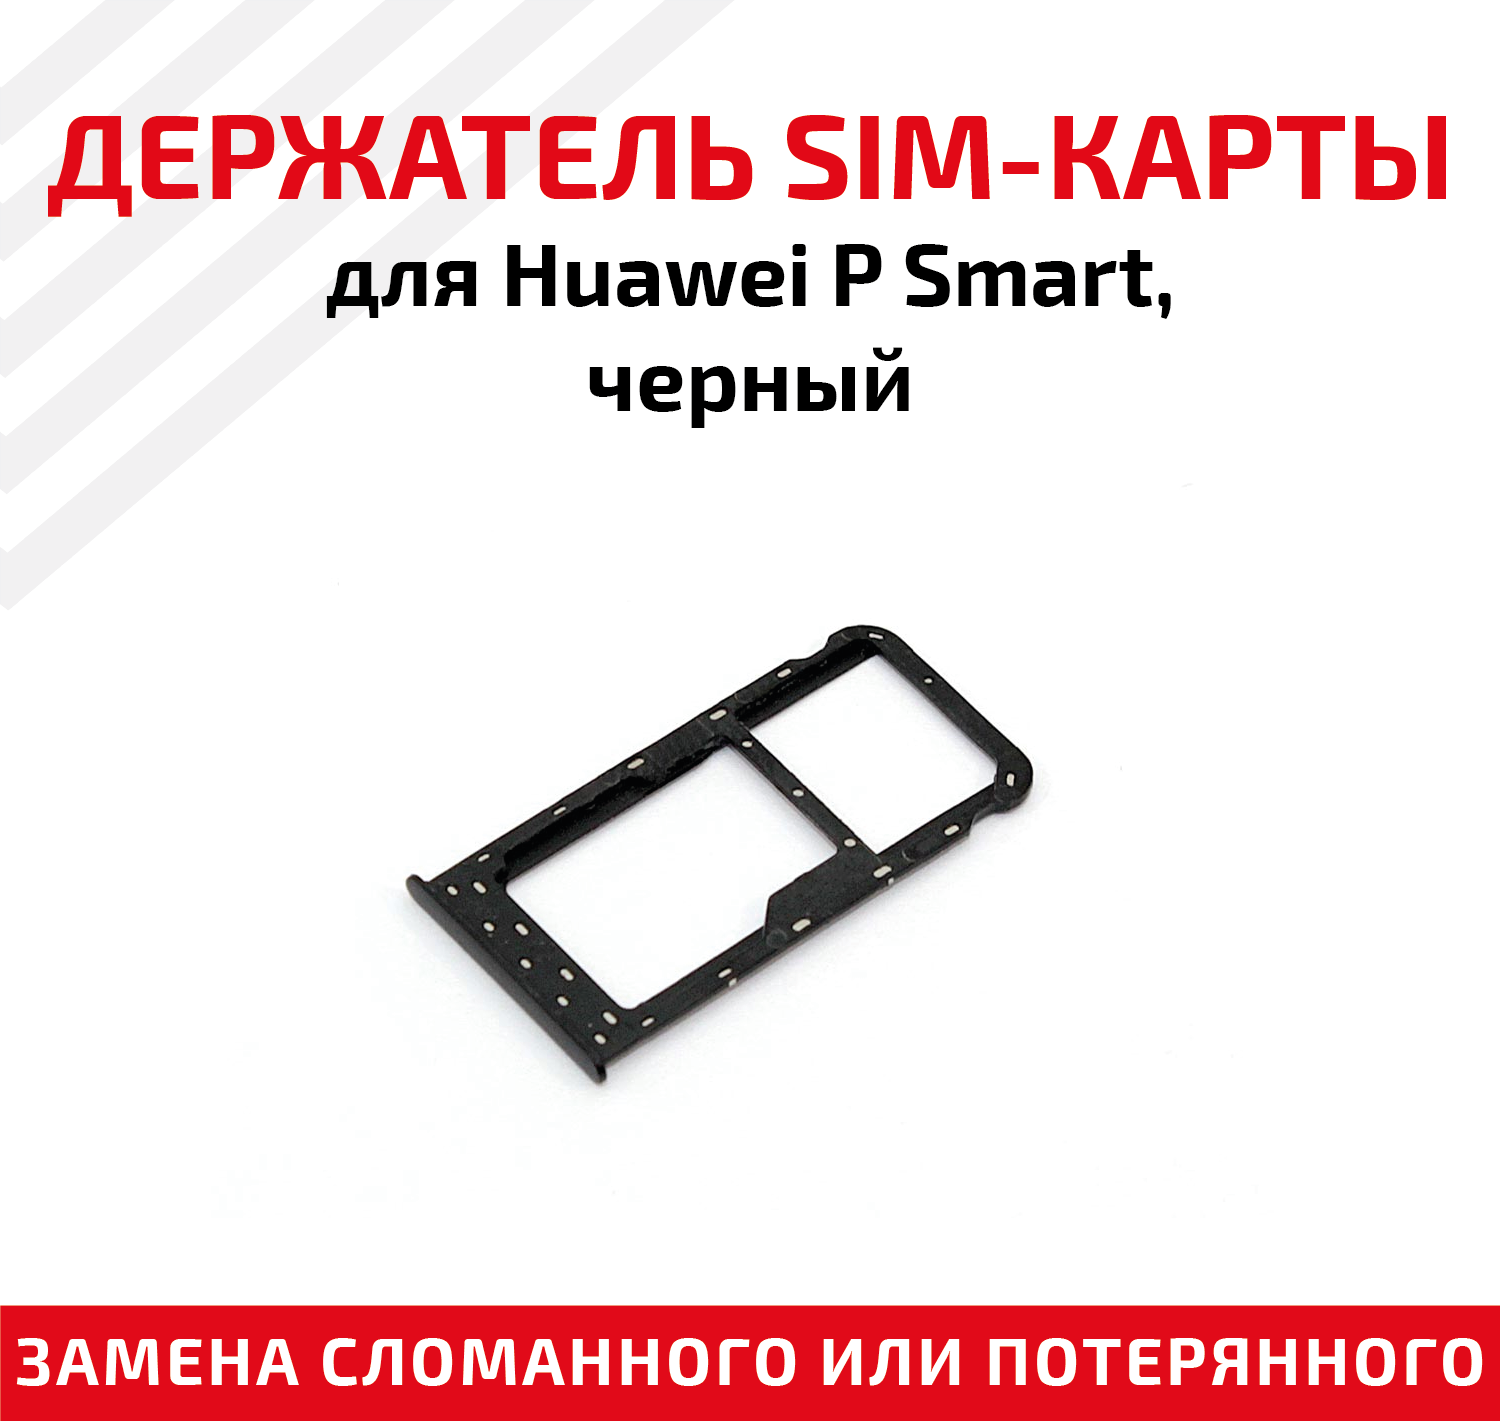 Лоток (держатель контейнер слот) SIM-карты для мобильного телефона (смартфона) Huawei P Smart черный